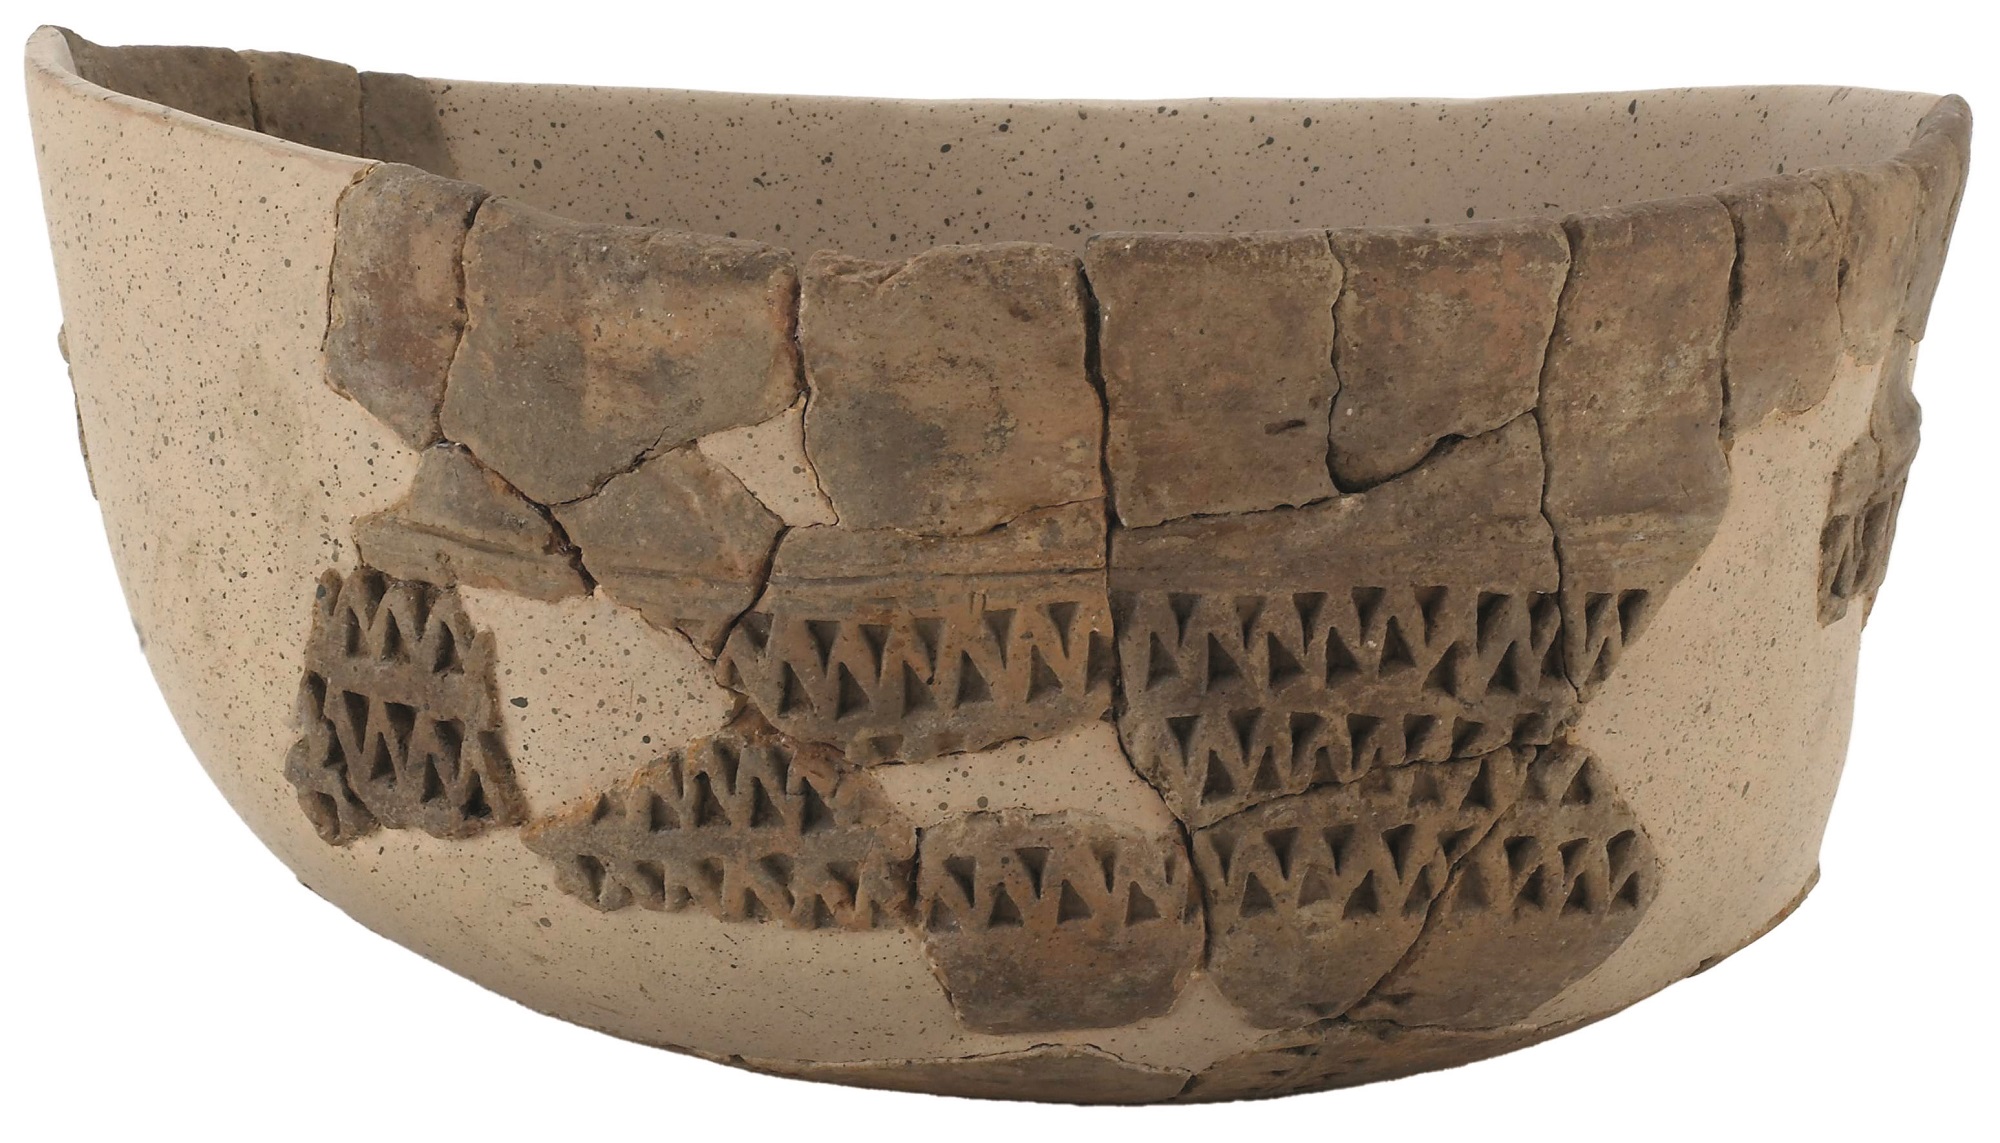 Céramique à décors excisés de l’âge du Bronze moyen, découverte sur le site du Bramont. Musées de Belfort. © Musées de Belfort